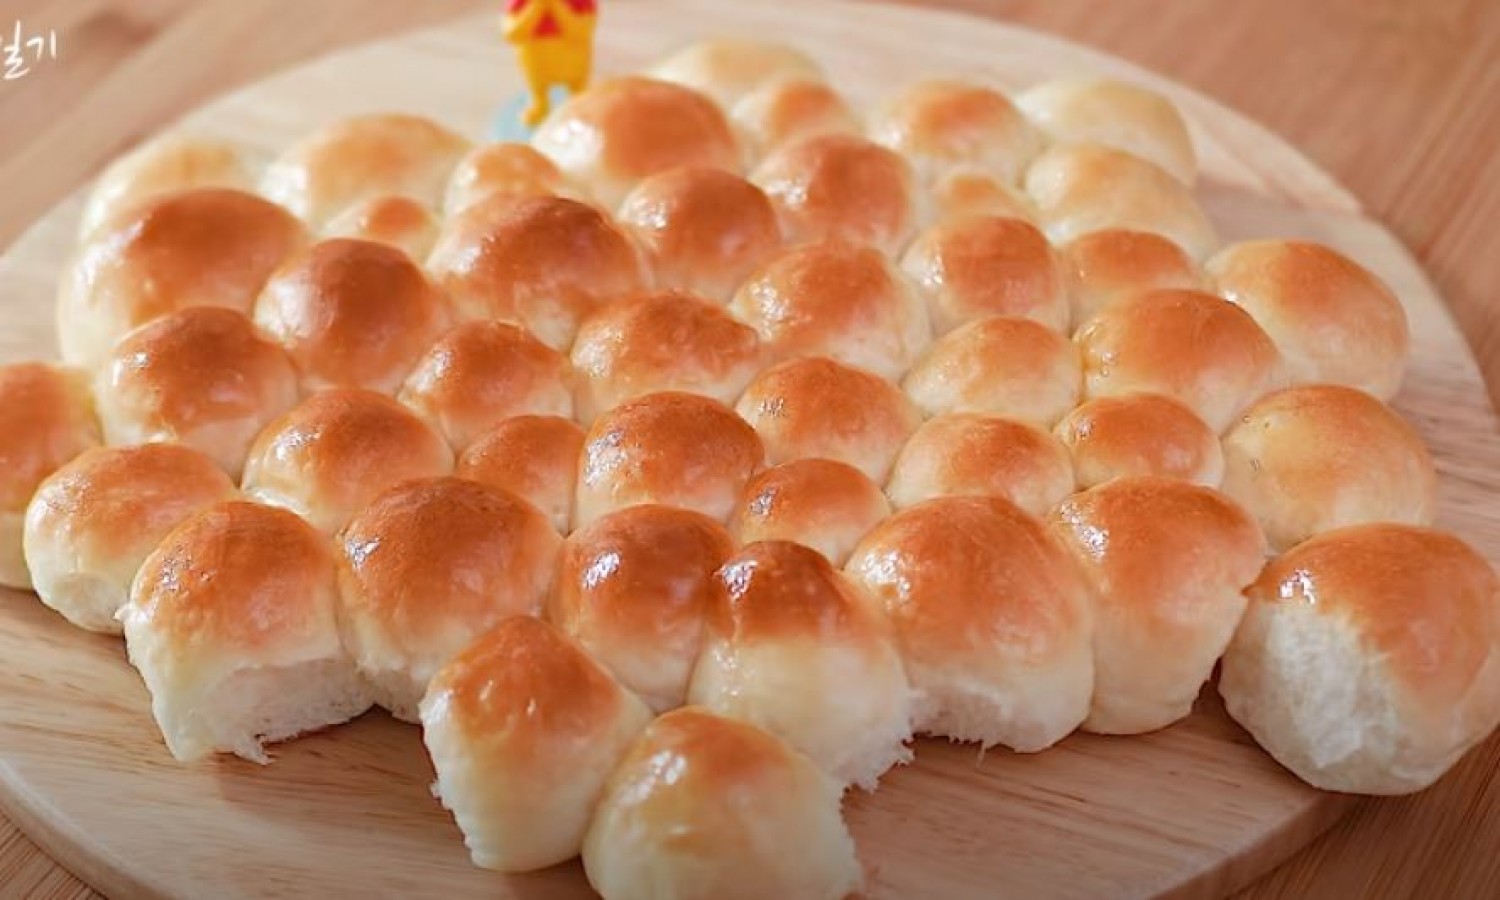 Buborékos-kenyér: hihetetlenül egyszerű elkészíteni, mégis mindenki a csodájára jár